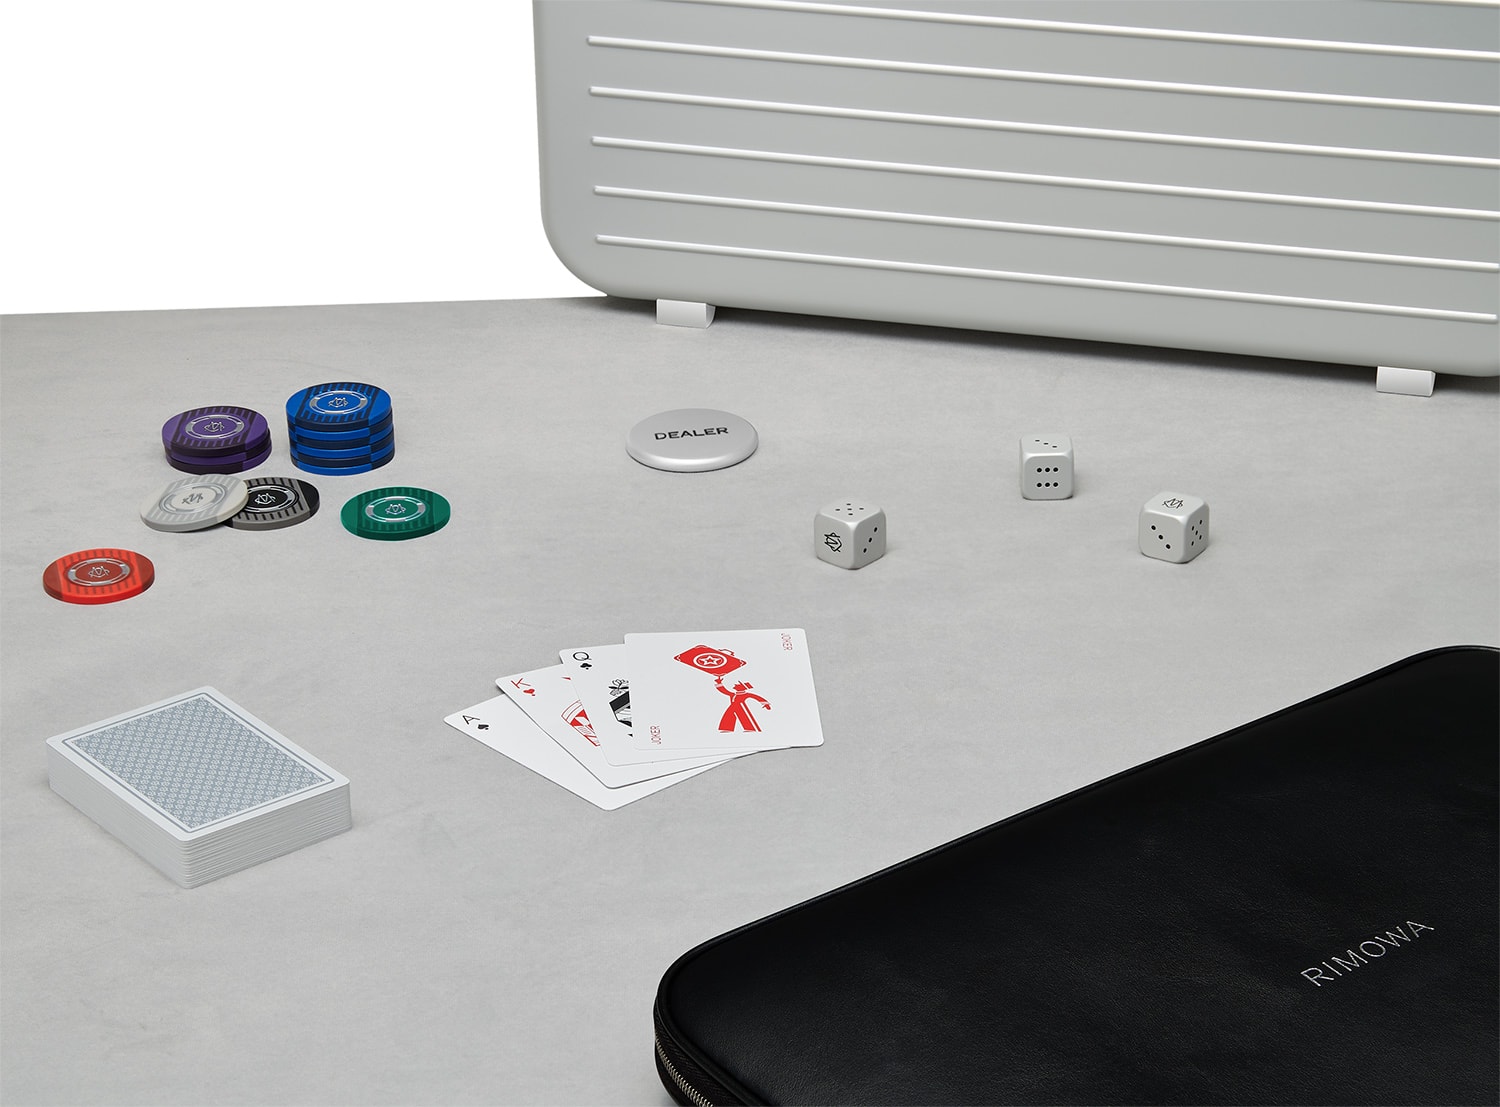 RIMOWA 正式推出全新 POKER ATTACHÉ 高級撲克牌手提箱